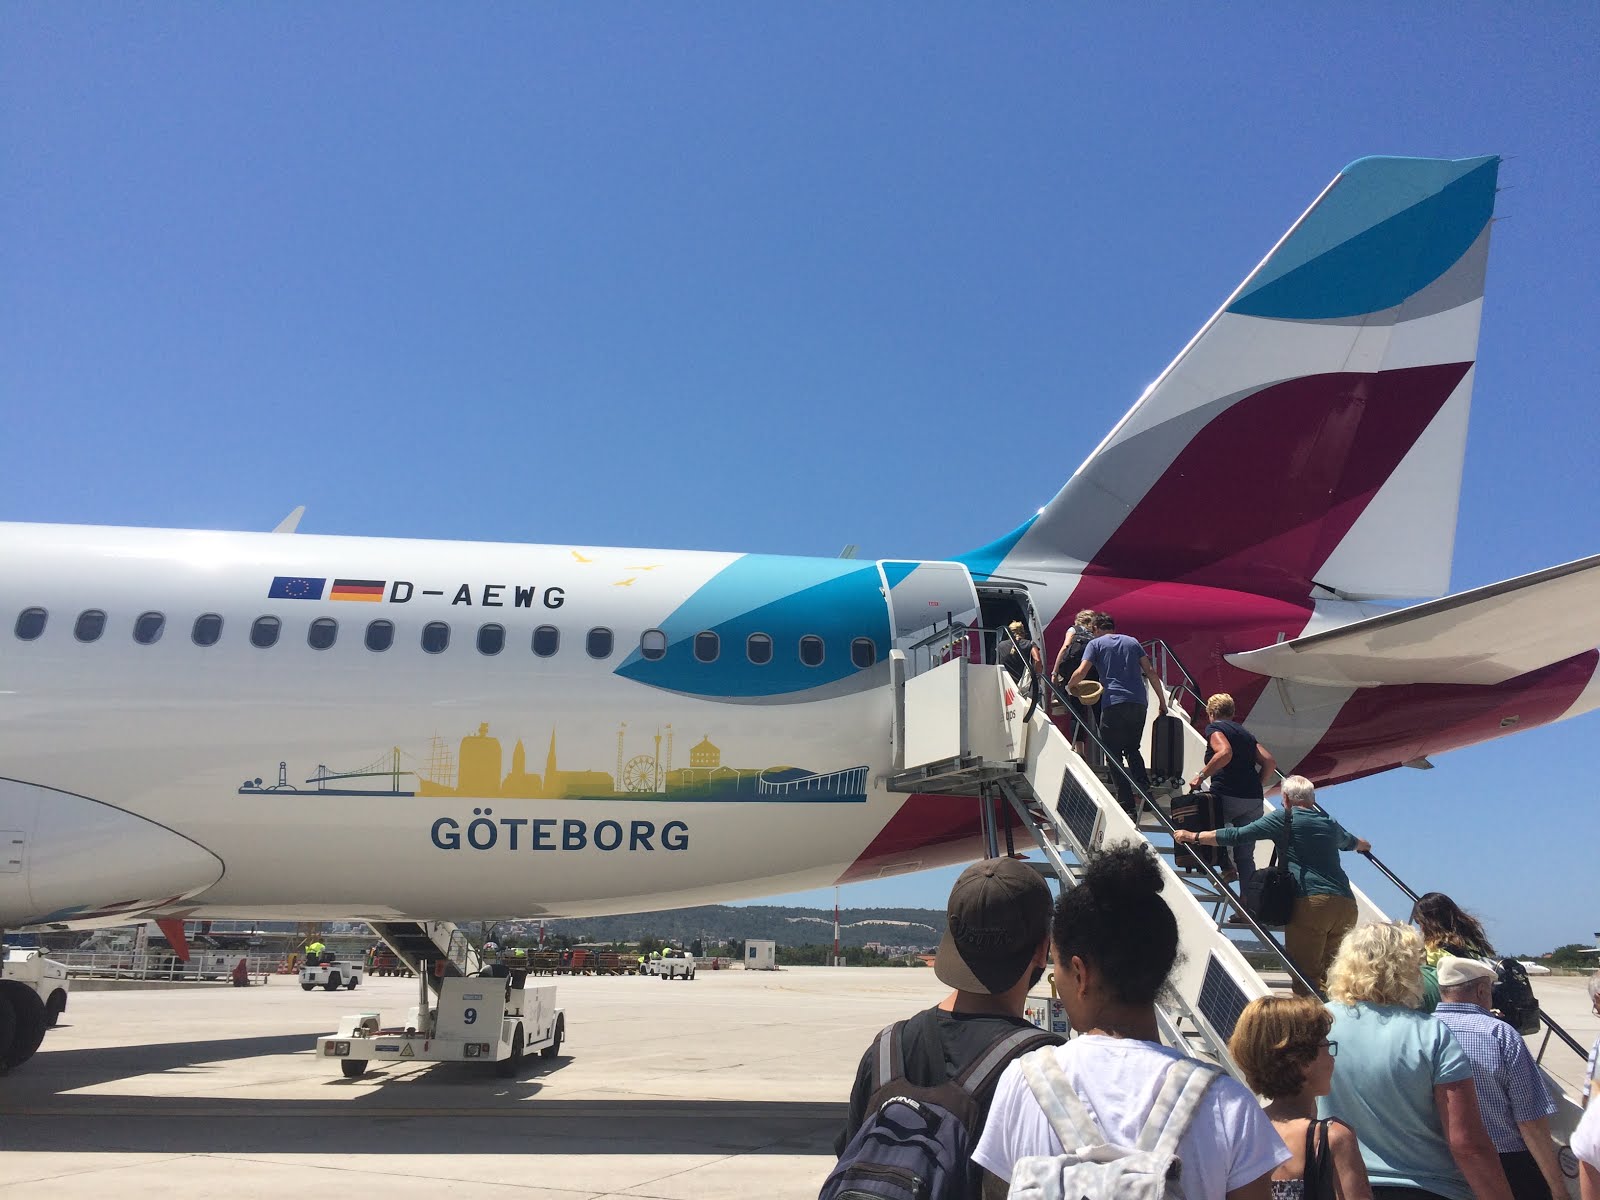 ユーロウイングス Eurowings 搭乗 タマゴのぼうしはすばらしい